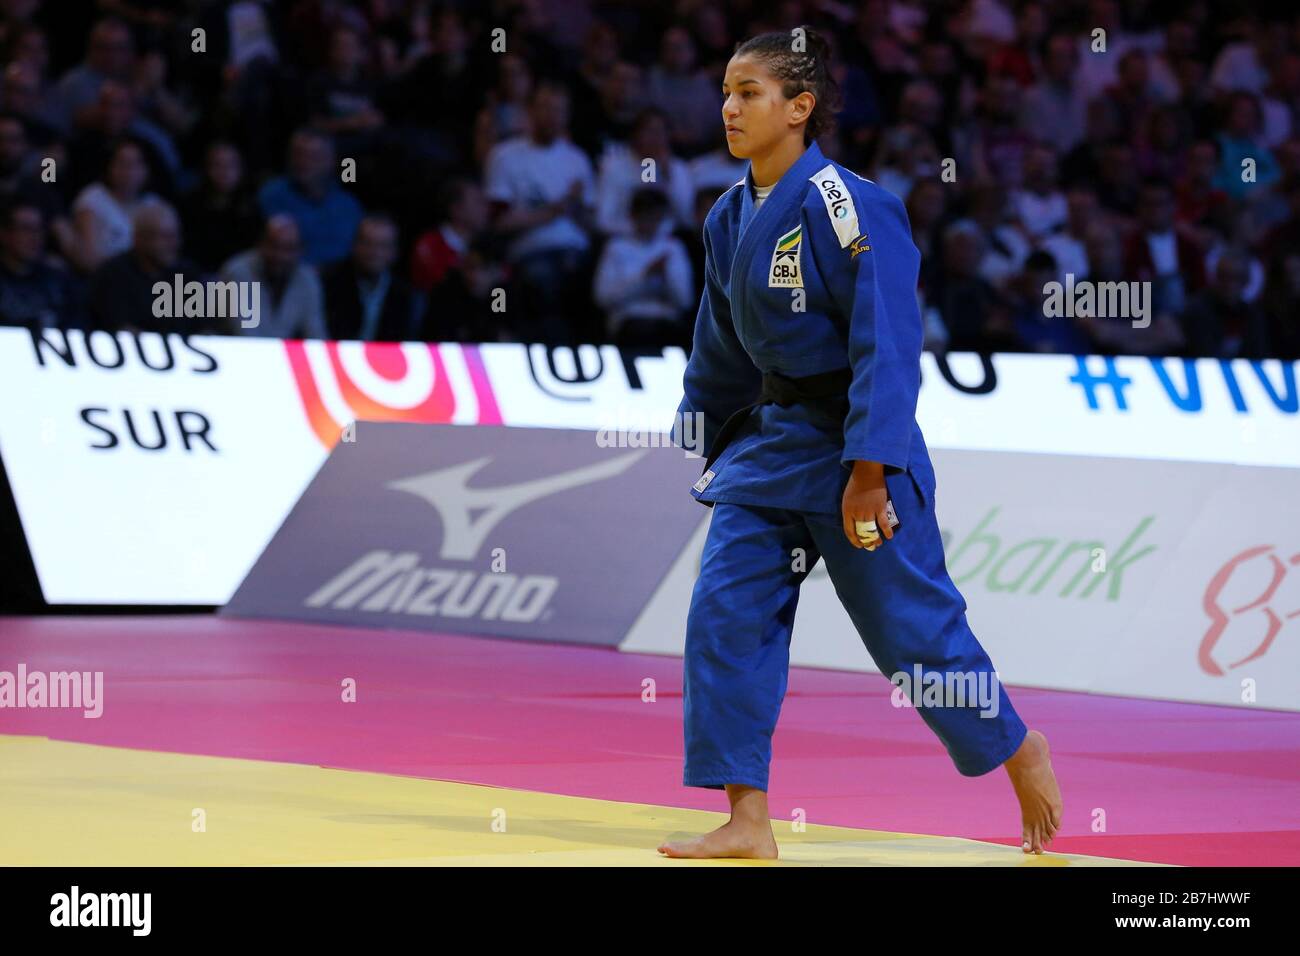 Paris, France - 08th Feb, 2020: Larissa Pimenta for Brazil against Sarah Menezes for Brazil, Women's -52kg, Bronze Medal Match (Credit: Mickael Chavet) Stock Photo